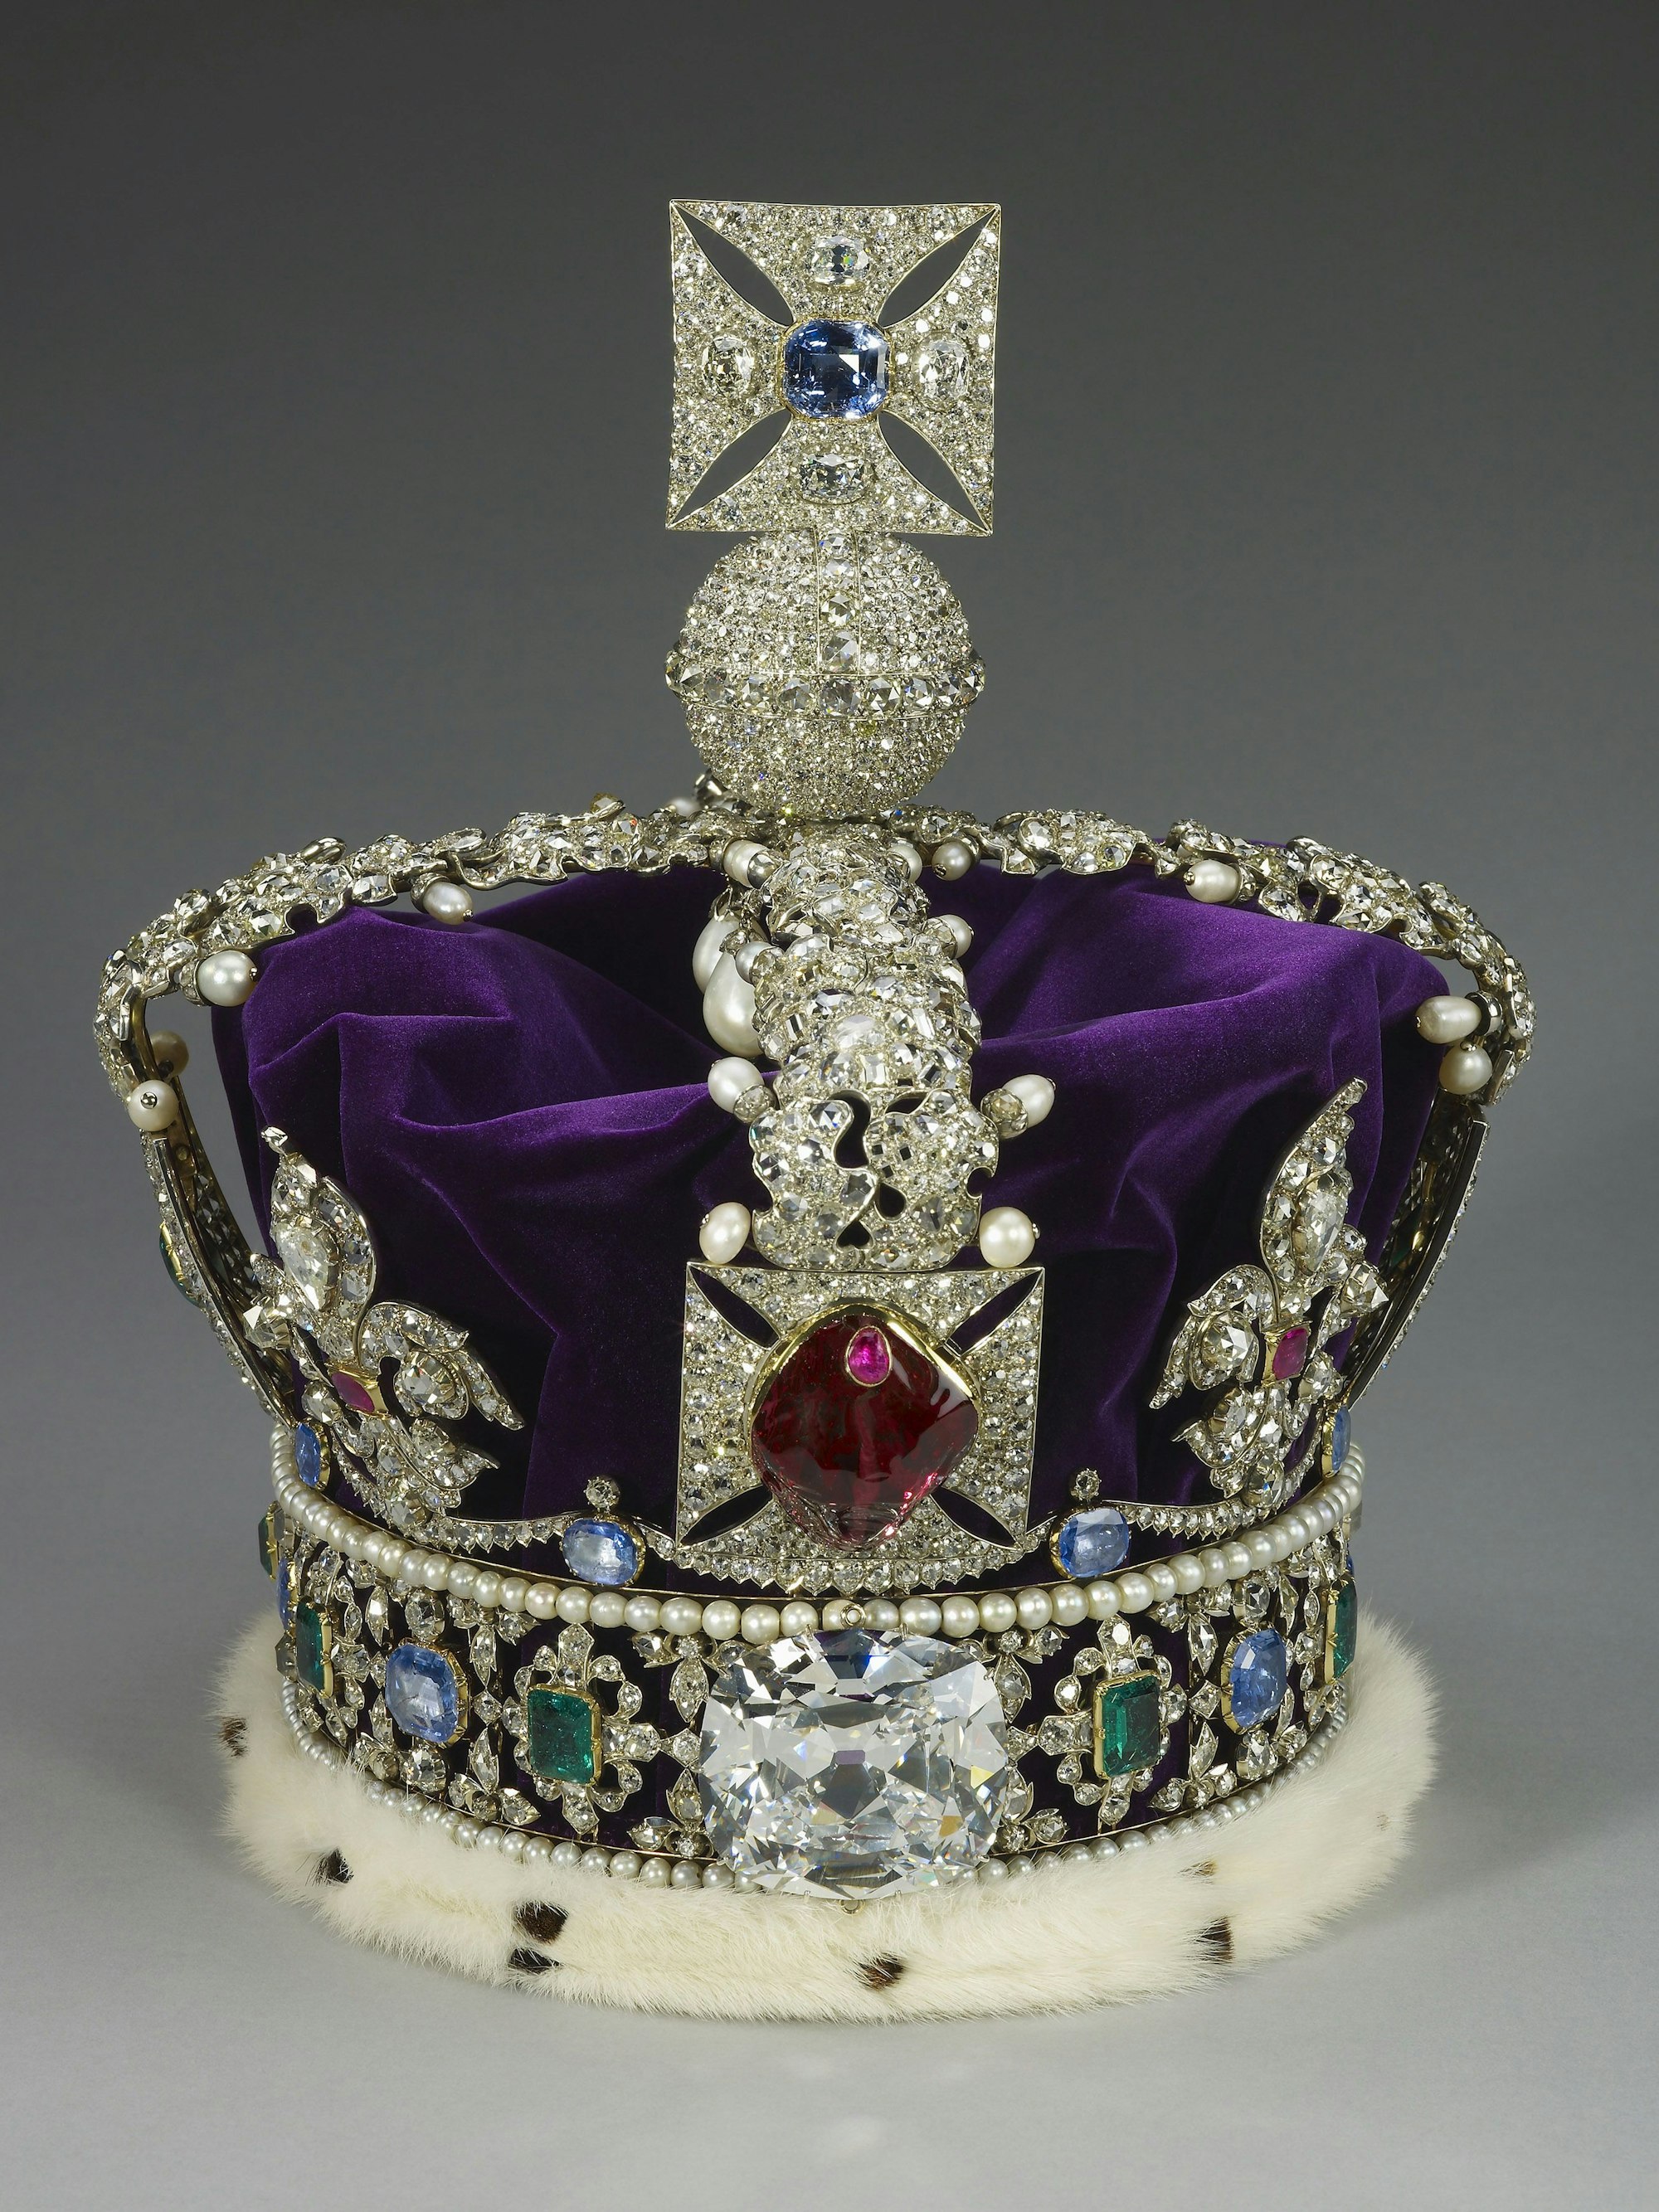 Dieses vom Buckingham Palast herausgegebenes Handout-Foto zeigt die Imperial State Crown, die bei der Krönung von König Charles III. in der Westminster Abbey in London am 6. Mai zu sehen sein wird.